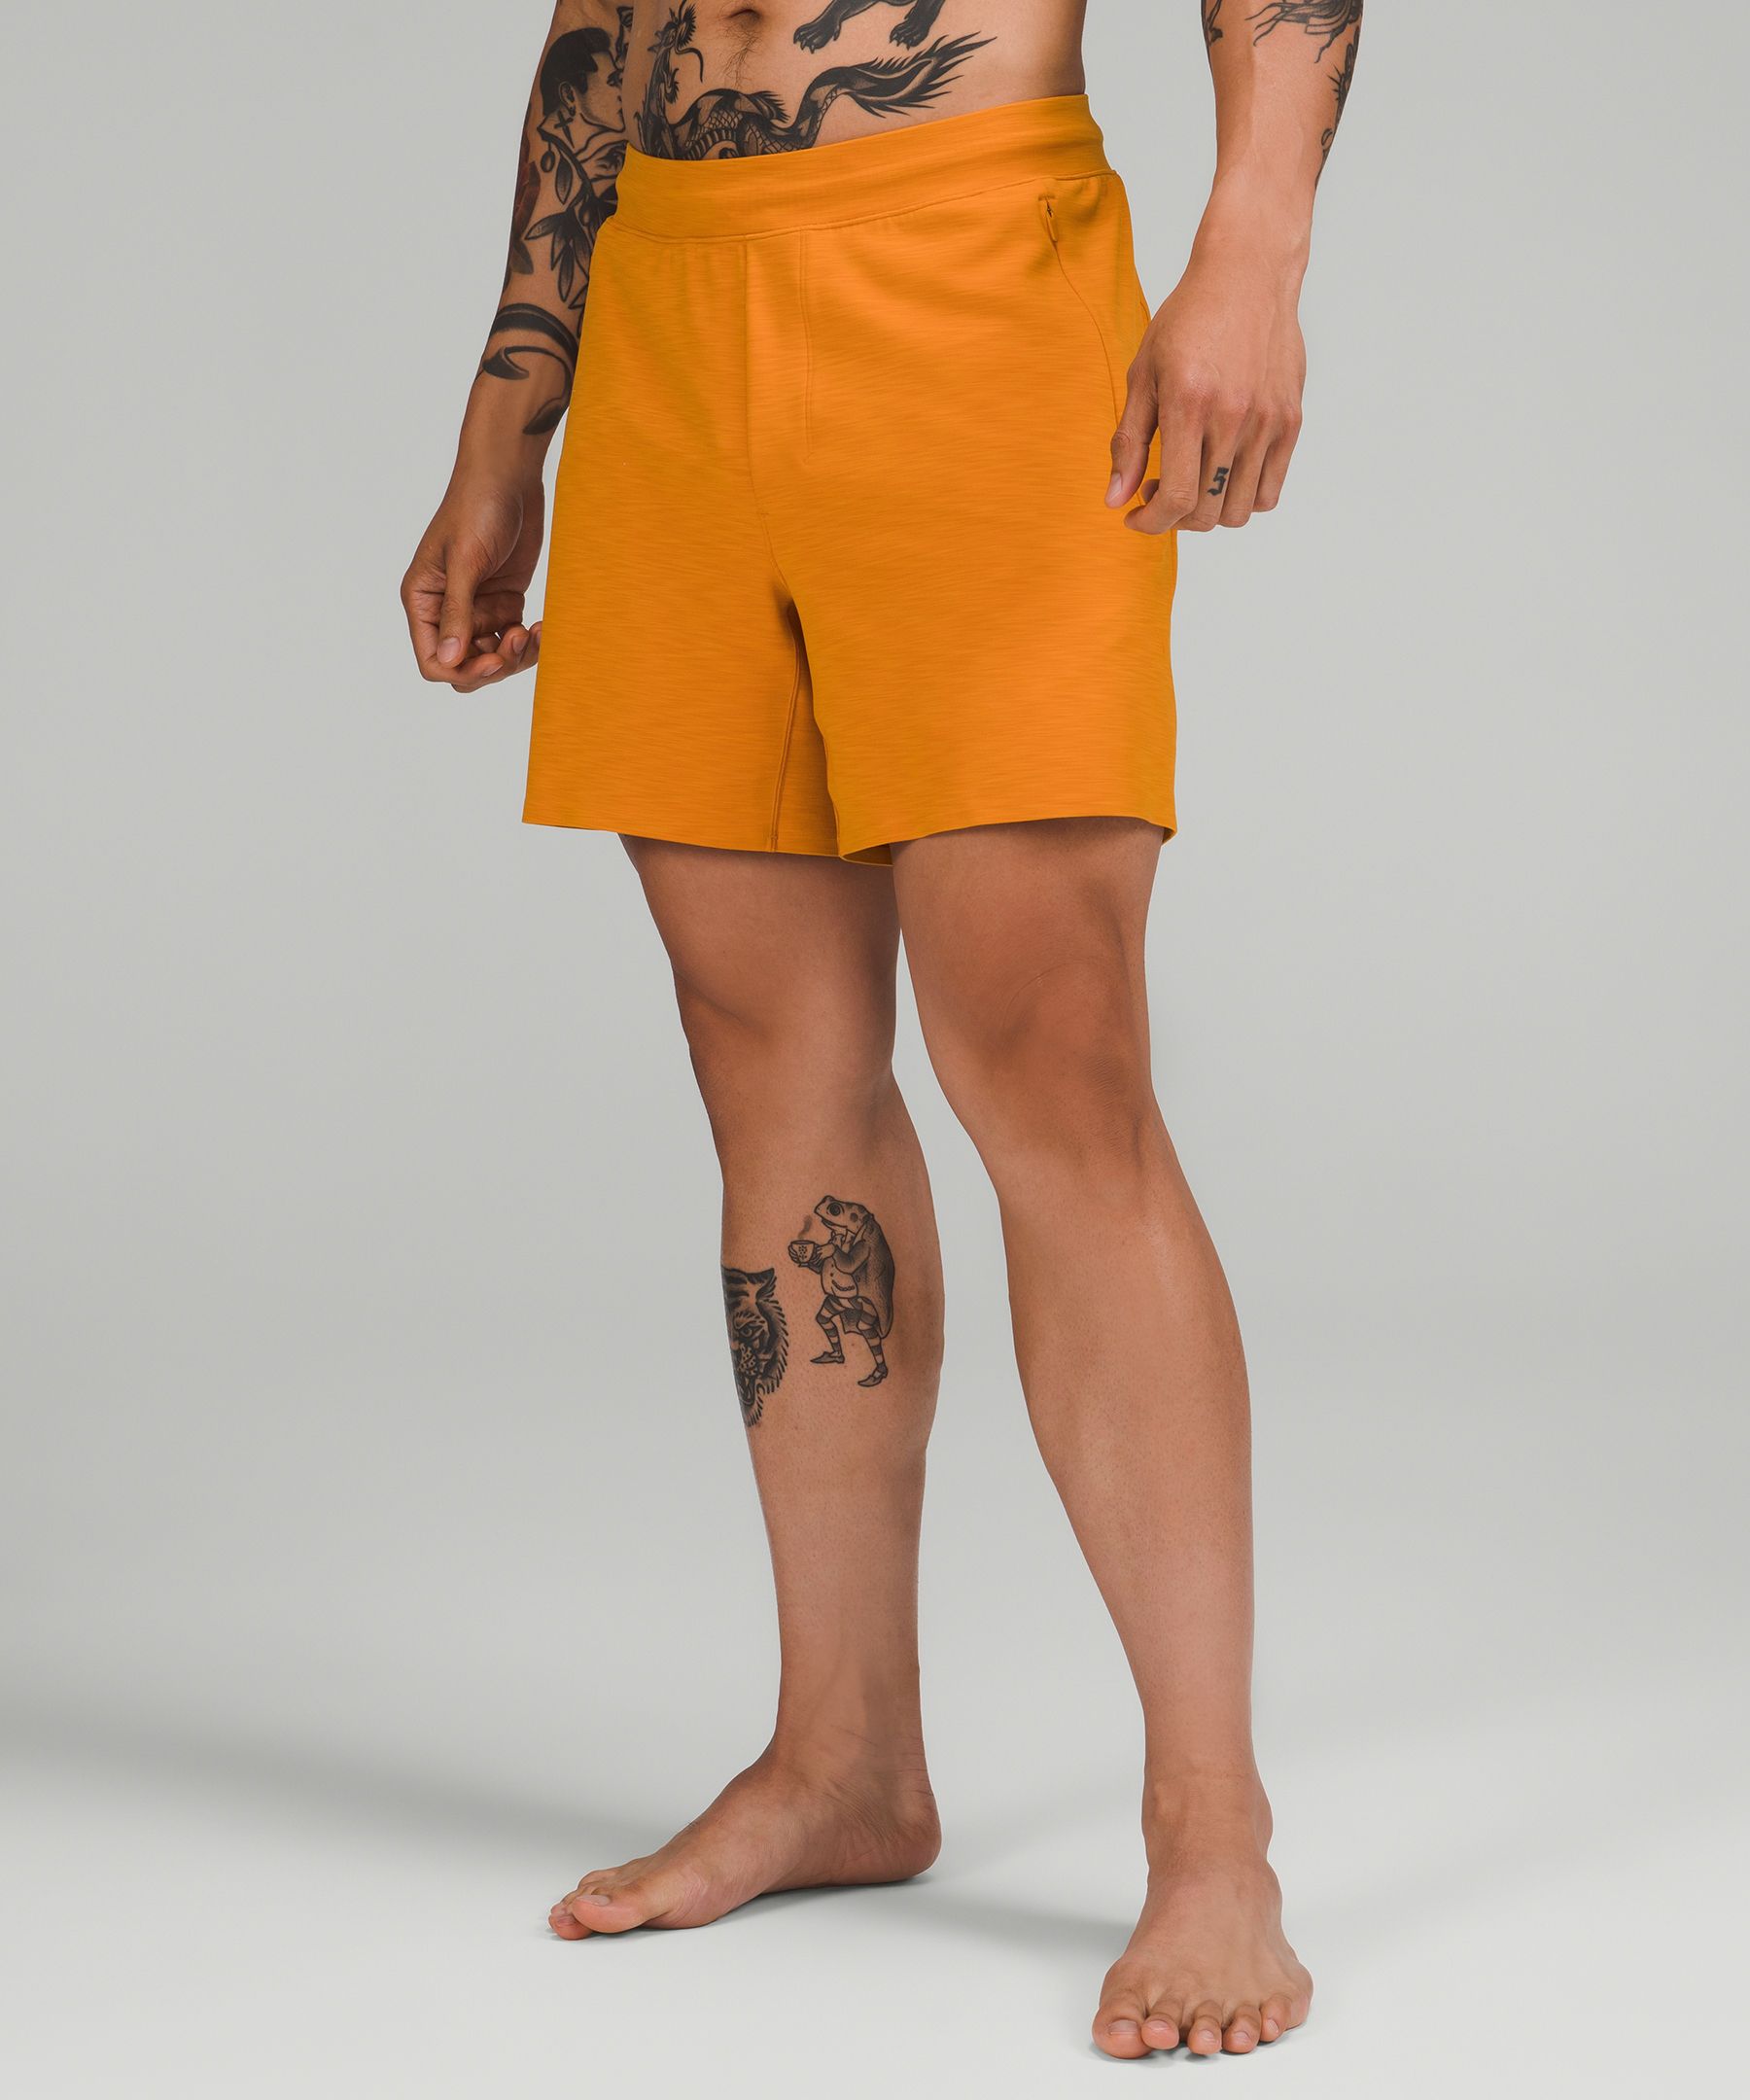 Lululemon Balancer Shorts 6" Everlux In Heathered Autumn Orange